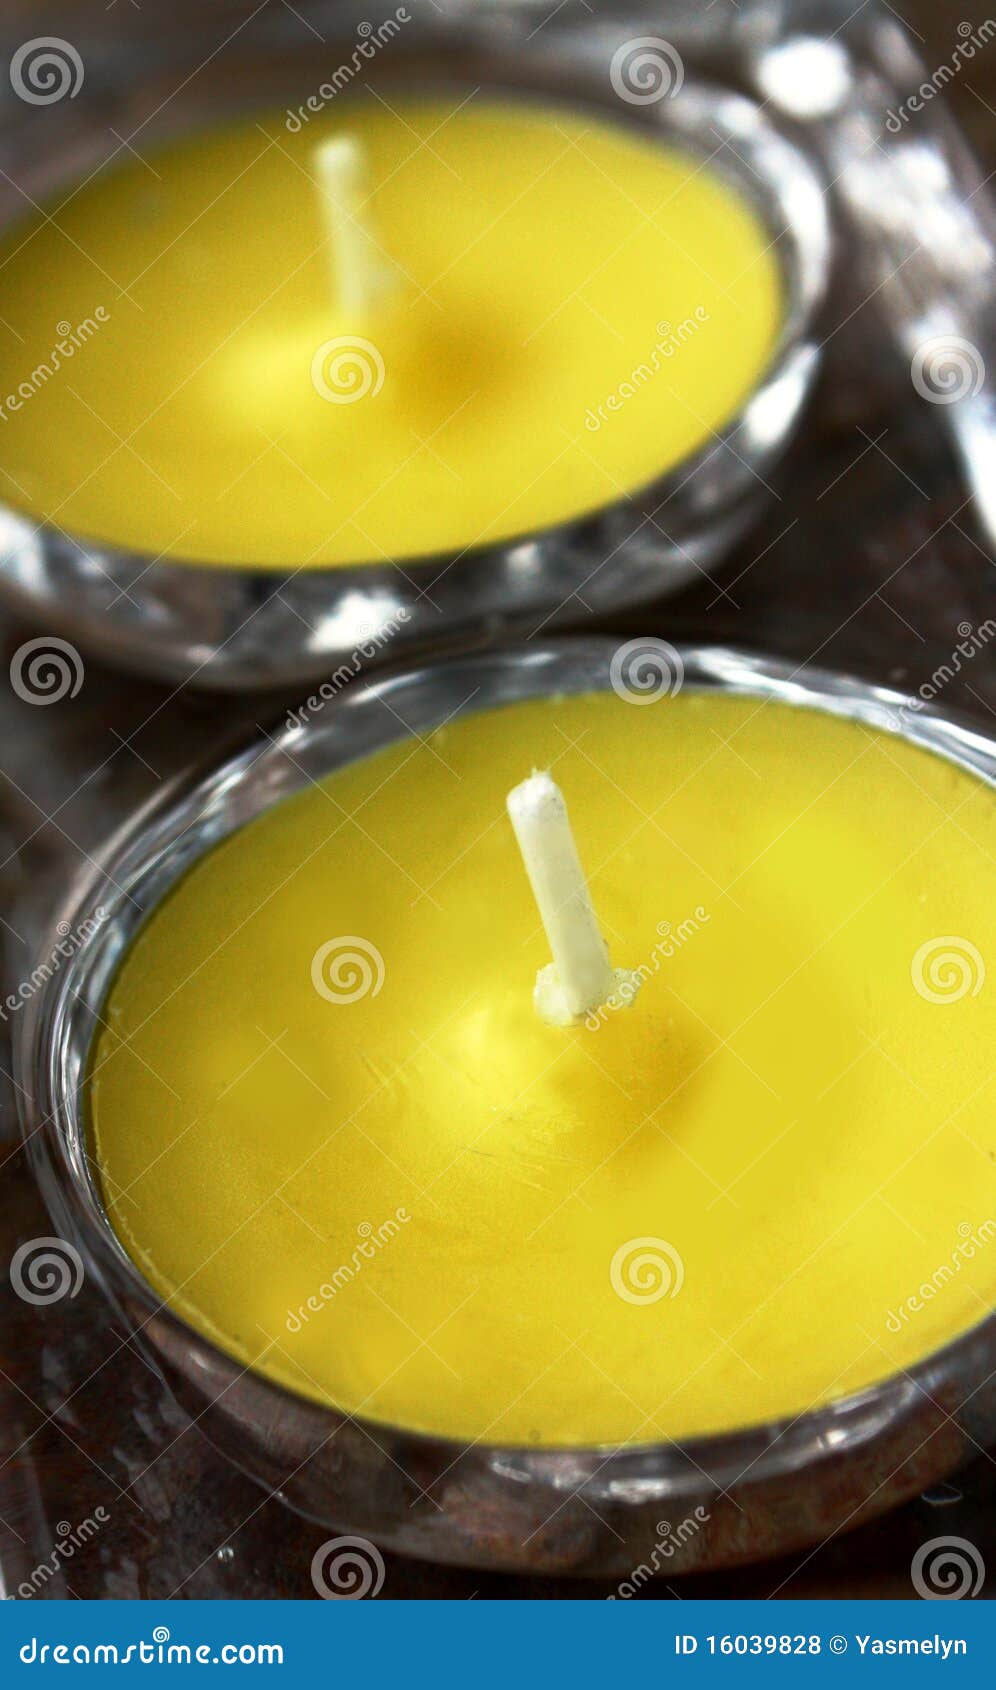 anti-mosquito citronella candle.